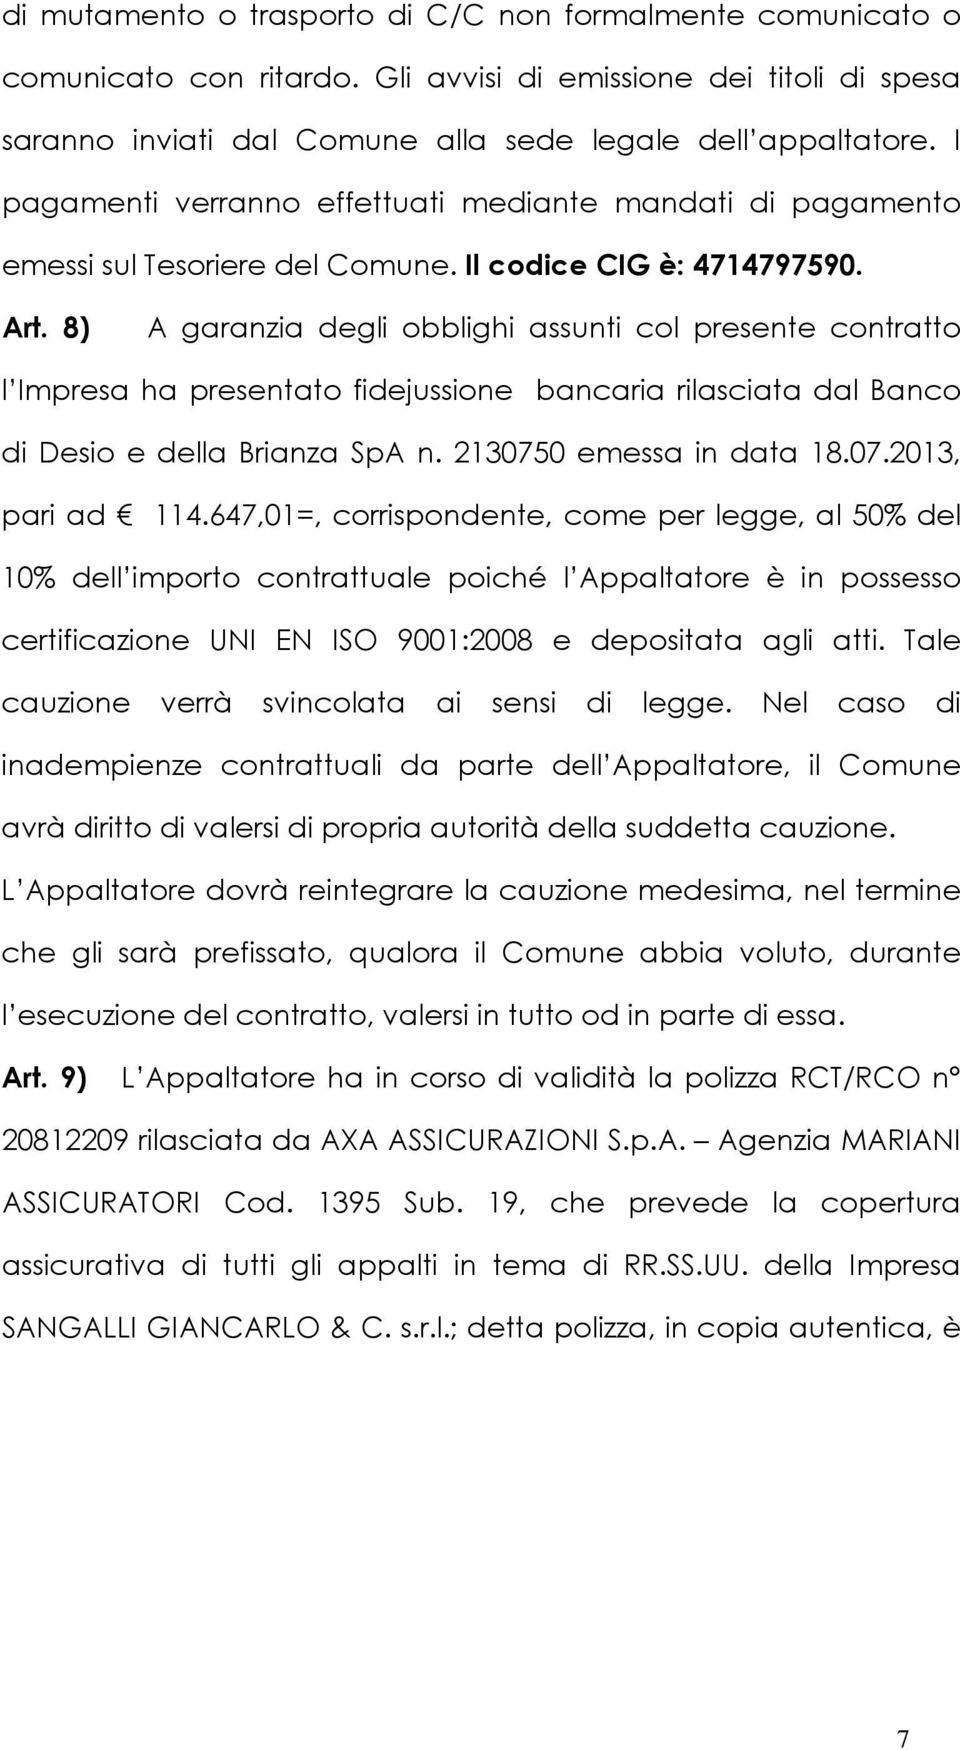 8) A garanzia degli obblighi assunti col presente contratto l Impresa ha presentato fidejussione bancaria rilasciata dal Banco di Desio e della Brianza SpA n. 2130750 emessa in data 18.07.2013, pari ad 114.